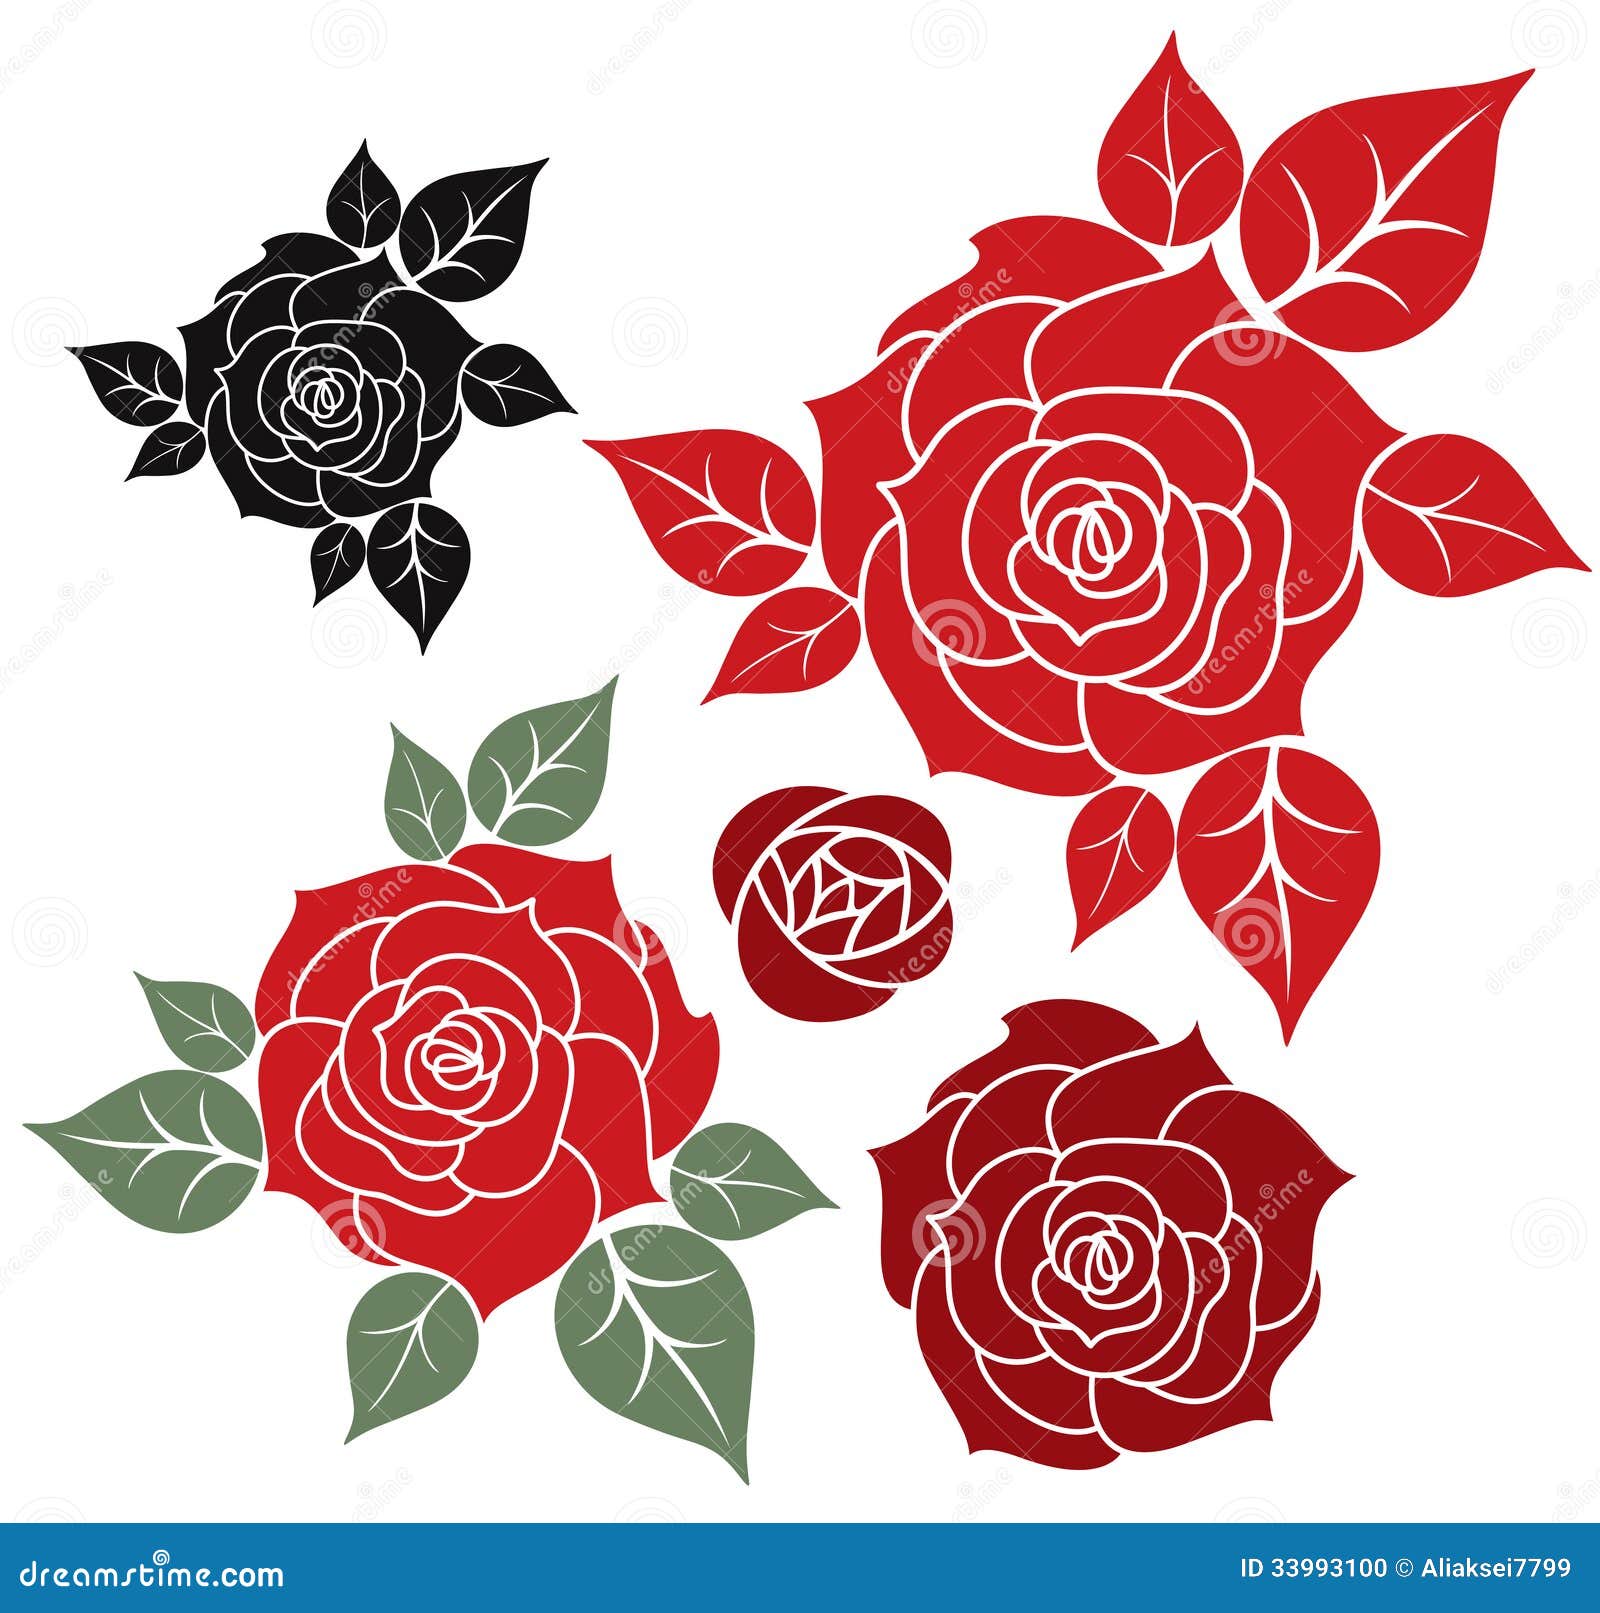 Red Rose stock vector. Illustration of flower, leaf, white - 33993100